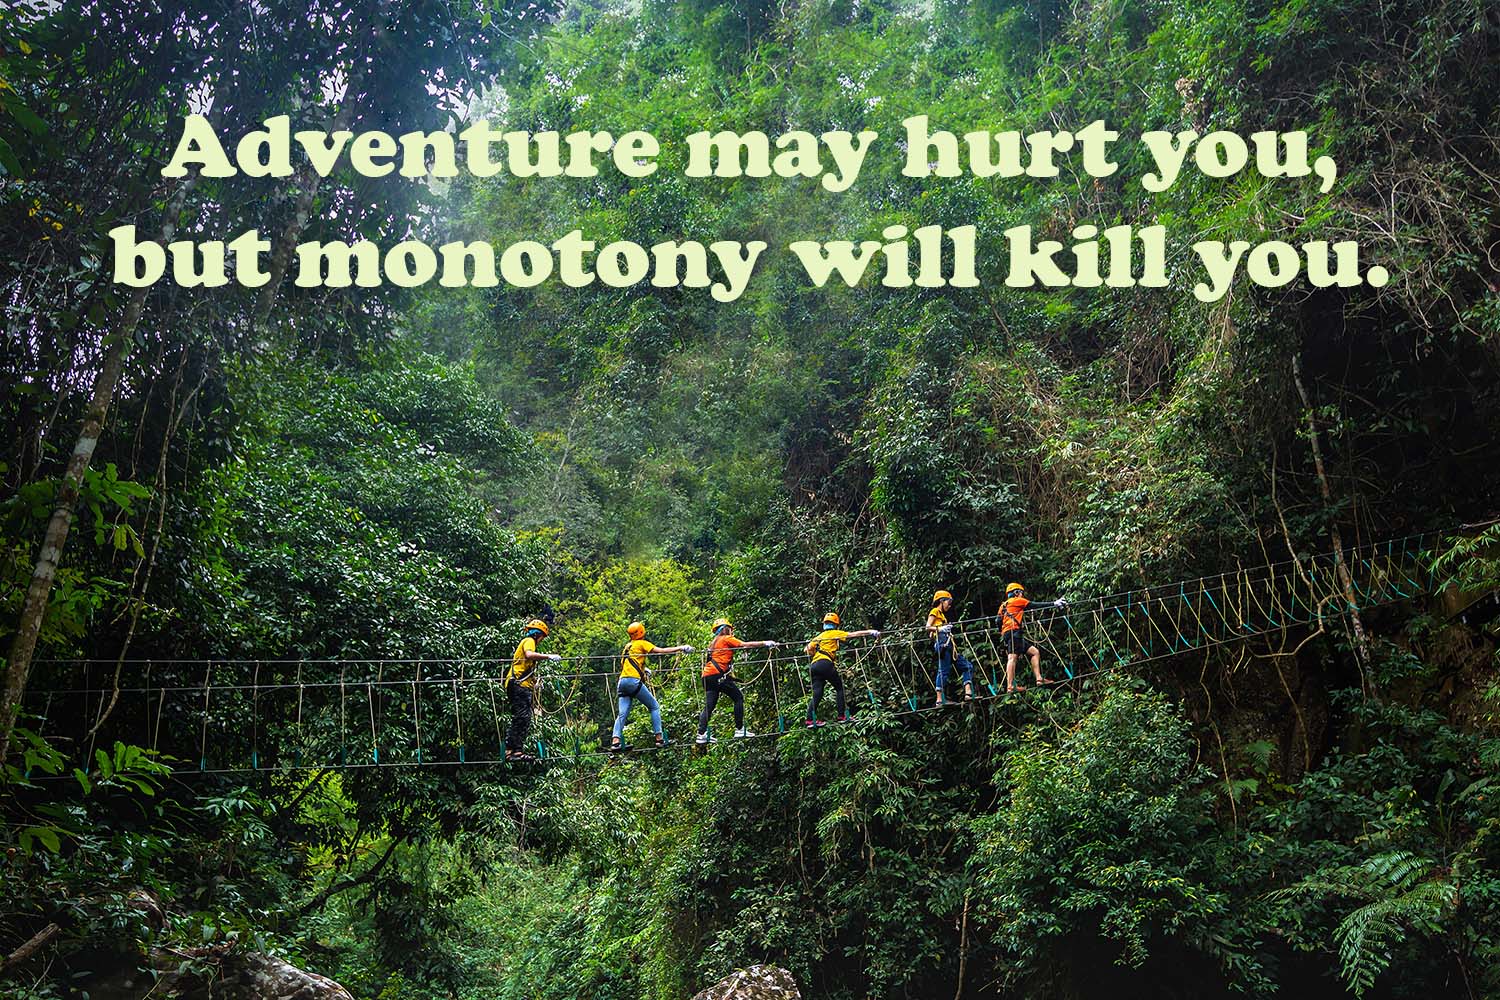 "Adventure may hurt you, but monotony will kill you."